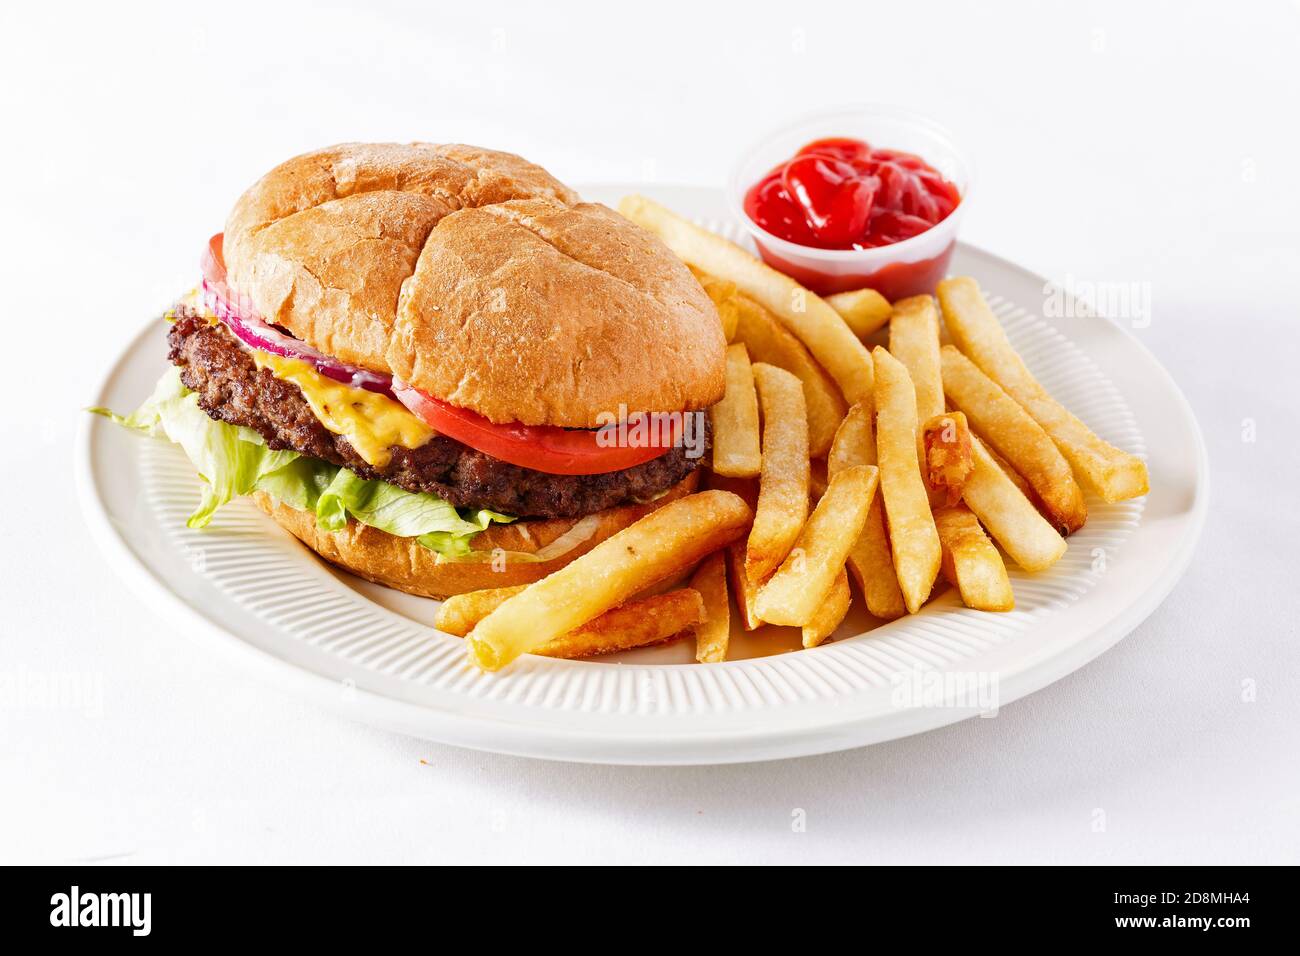 Cheeseburger in stile americano extra large con patatine fritte e ketchup su una superficie bianca Foto Stock